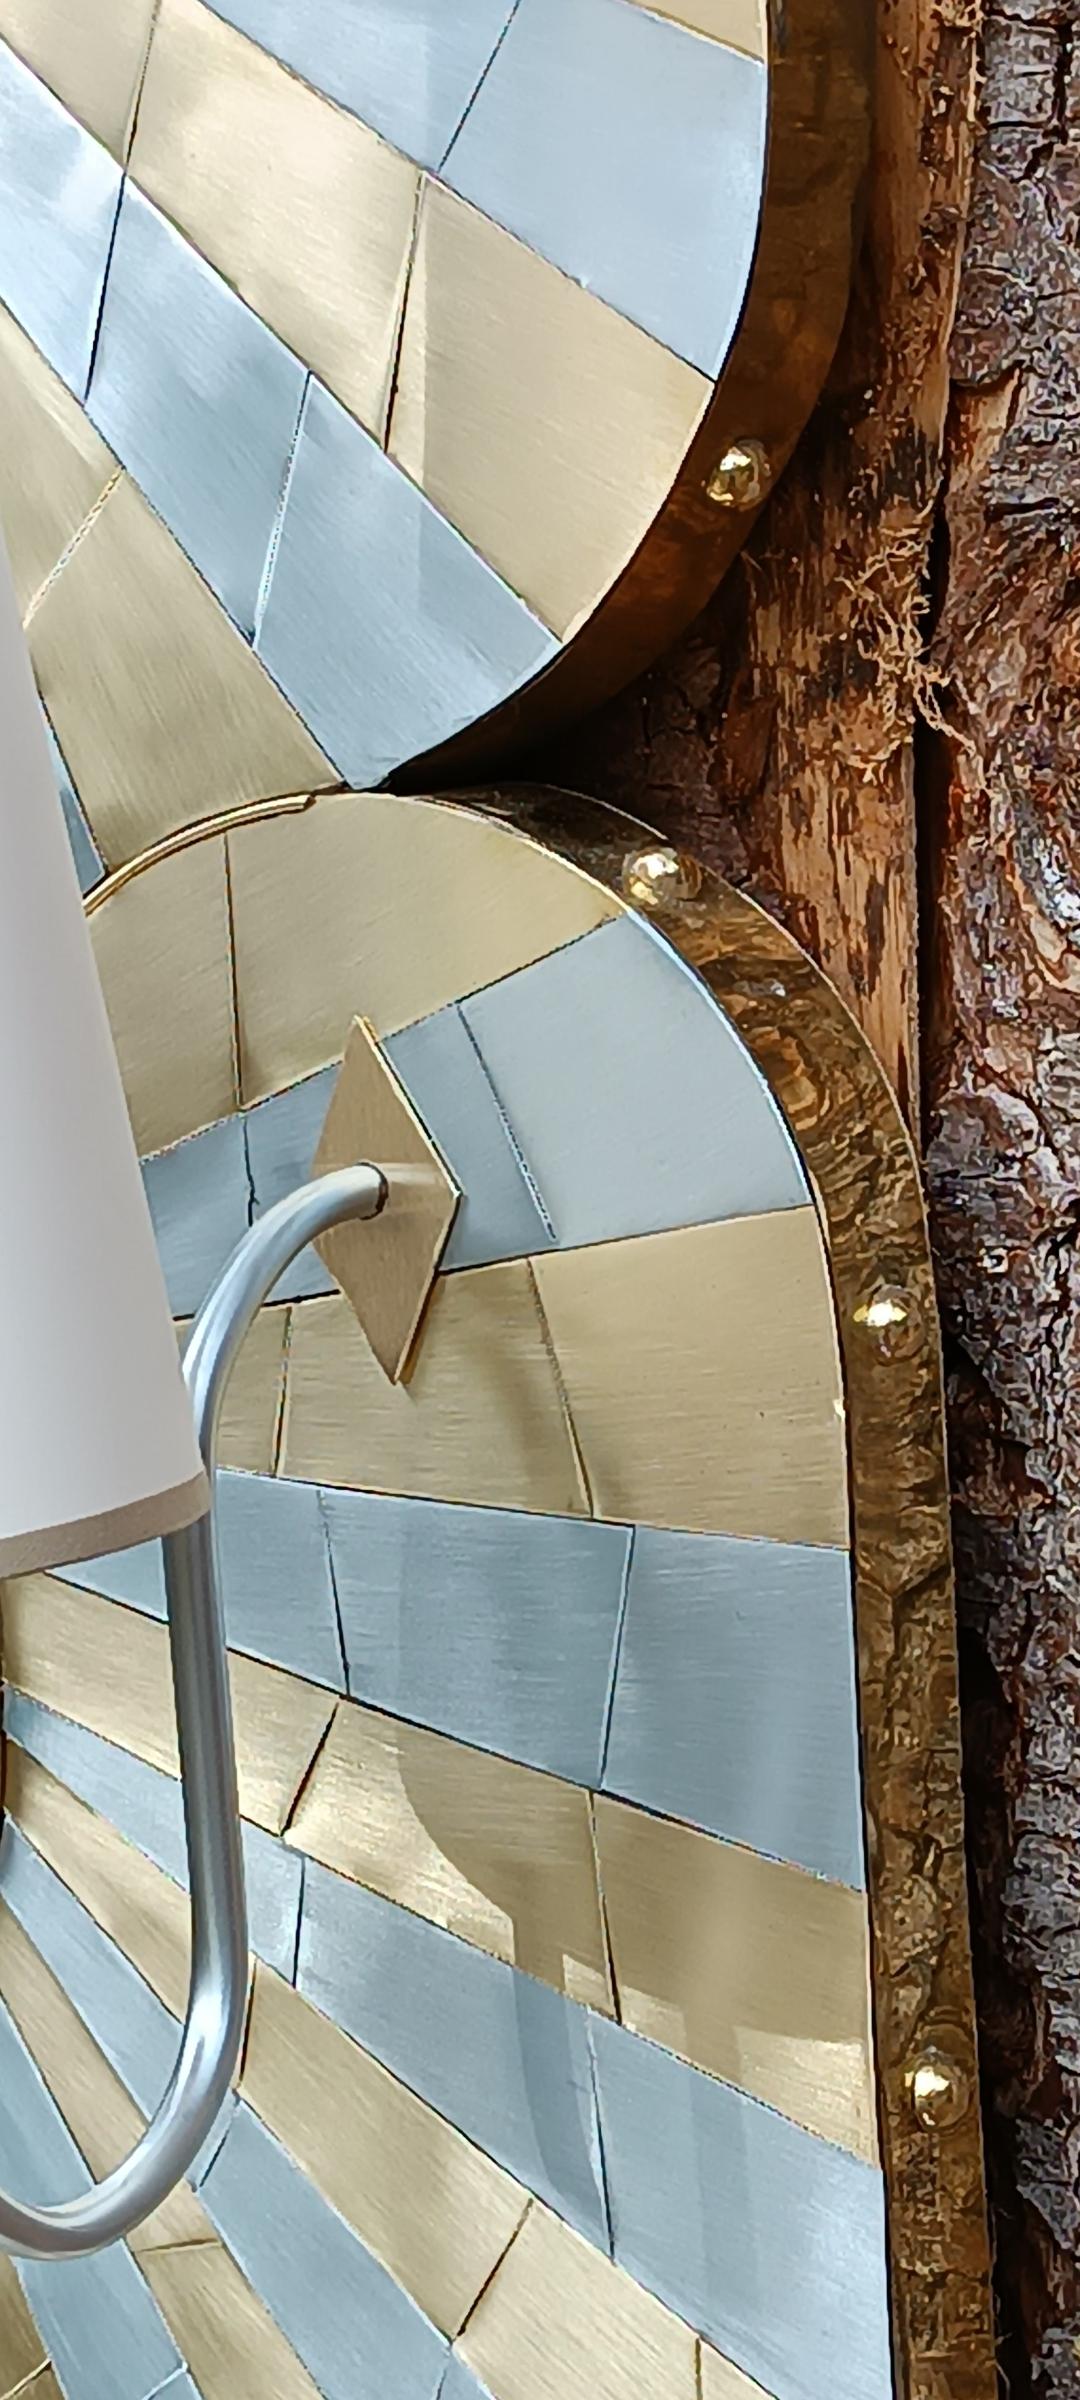 Grand miroir de forme libre et ses appliques en marqueterie de zinc et laiton, ceinturé d'un large bandeau de laiton clouté.
Abat jours des appliques en papier épais.